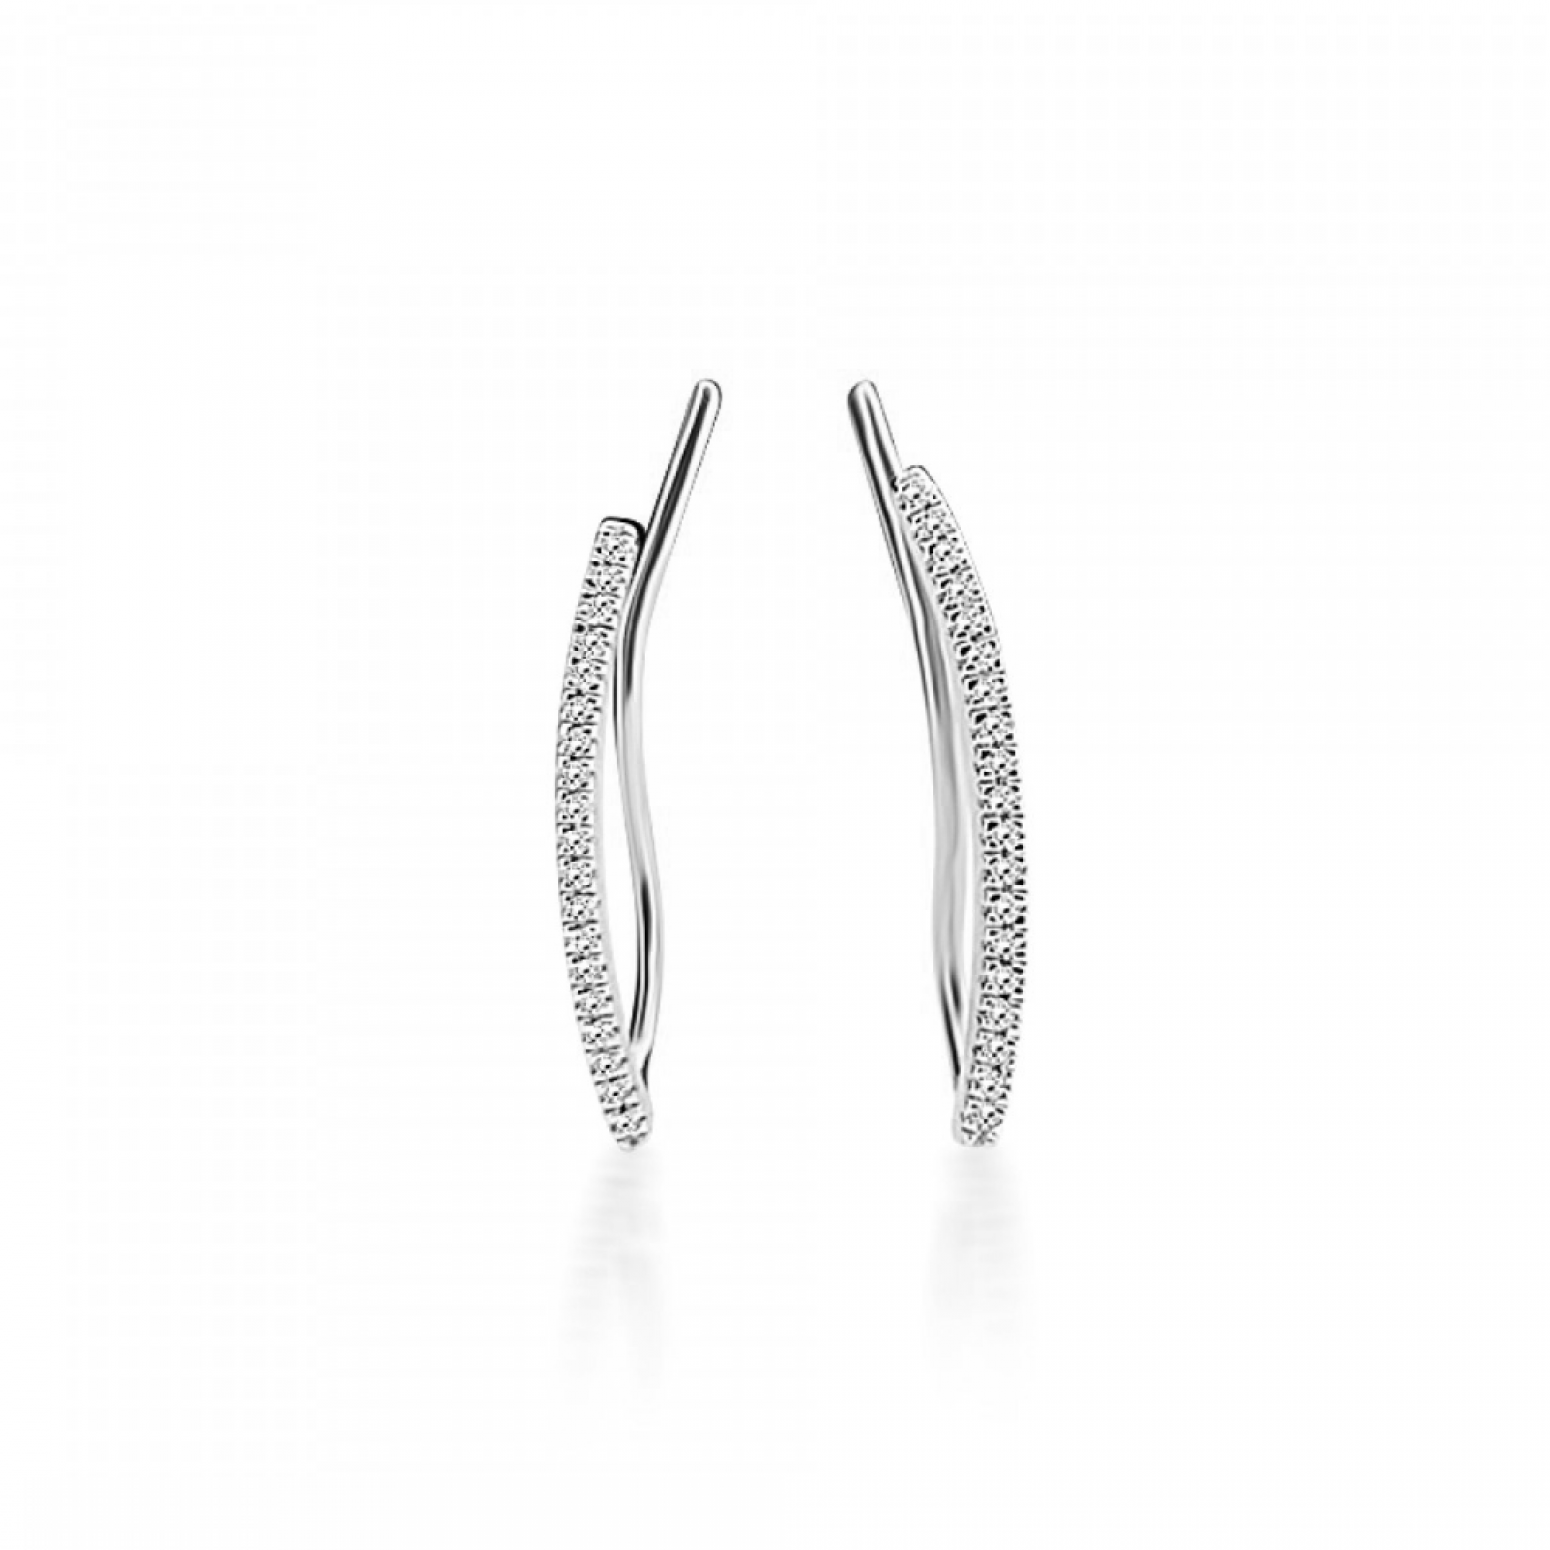 Multistone earrings 14K white gold with diamonds 0.06ct, VS1, H, sk3938 EARRINGS Κοσμηματα - chrilia.gr